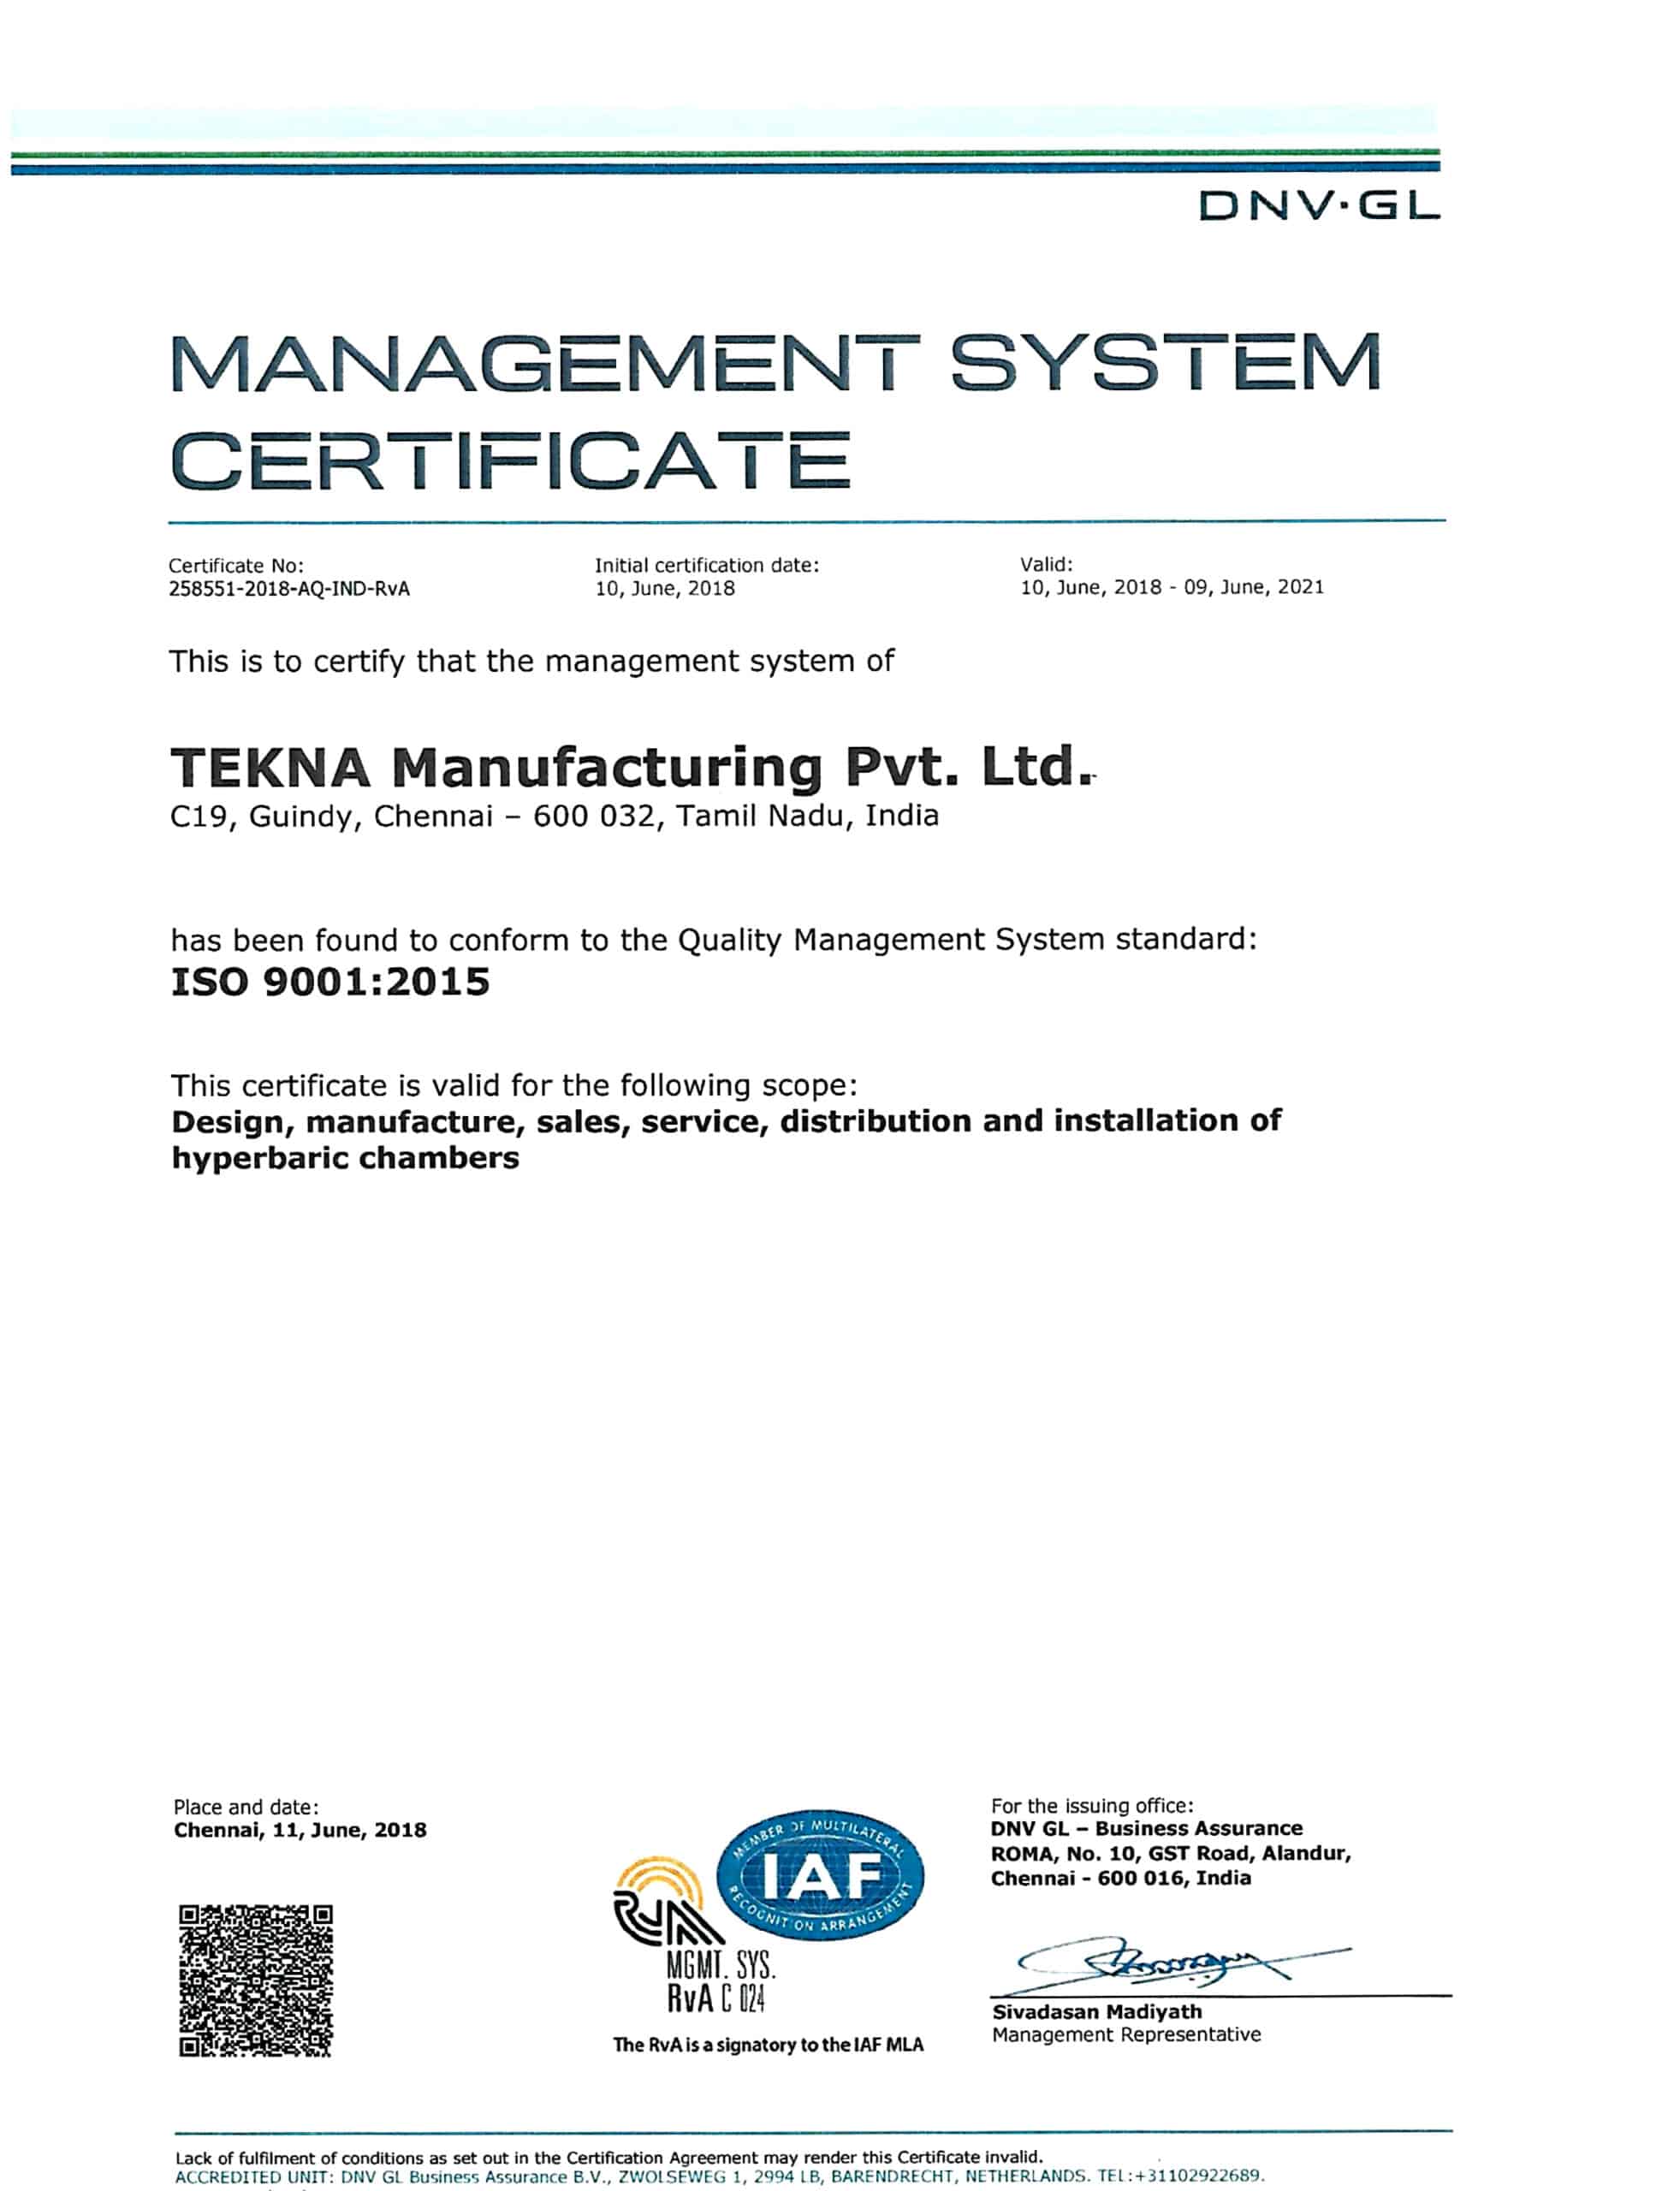 TEKNA ԱՐՏԱԴՐՈՒԹՅՈՒՆ ISO 9001-2015